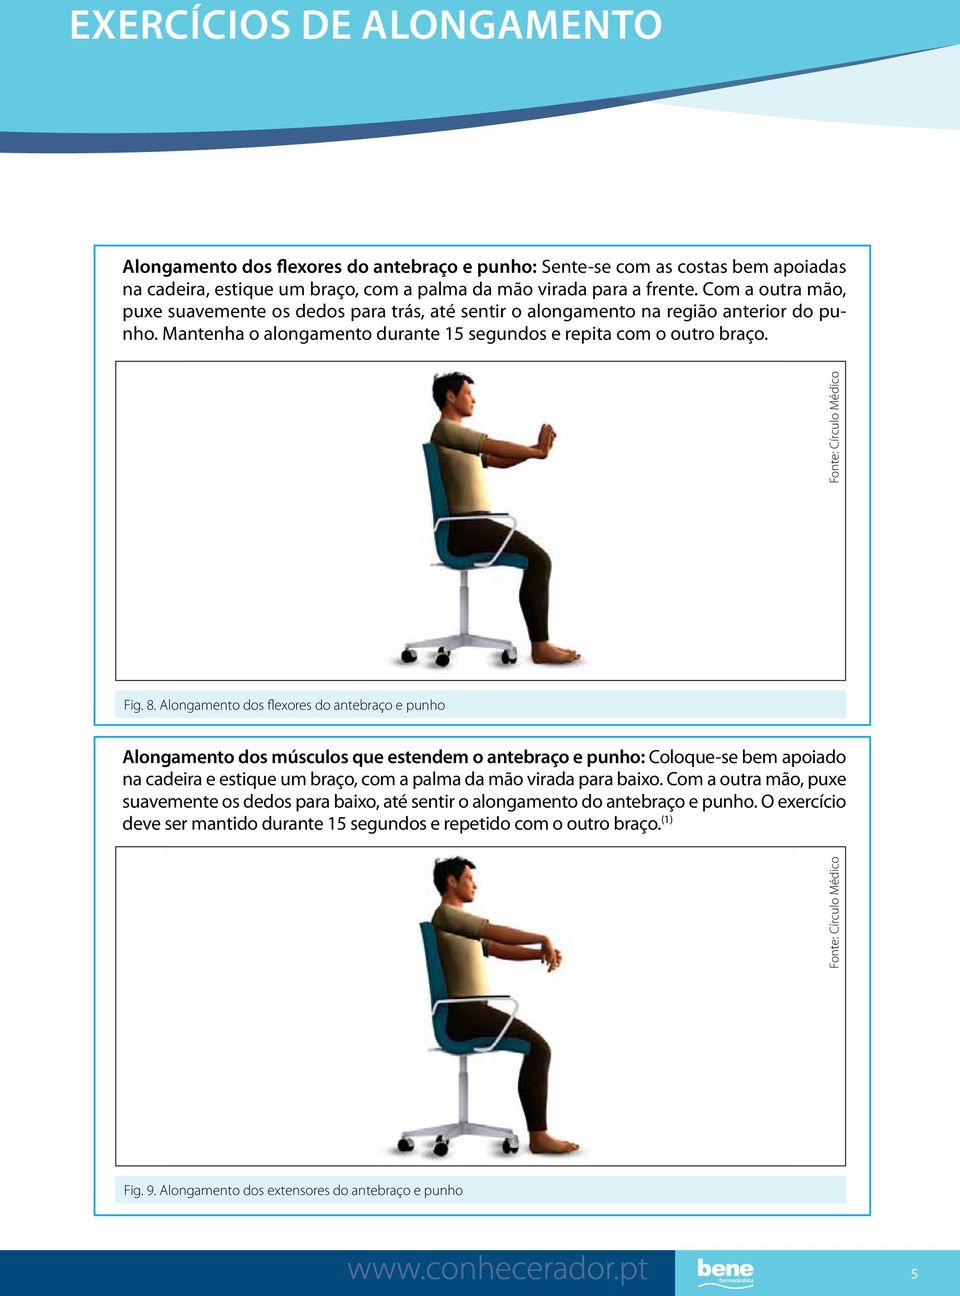 Alongamento dos flexores do antebraço e punho Alongamento dos músculos que estendem o antebraço e punho: Coloque-se bem apoiado na cadeira e estique um braço, com a palma da mão virada para